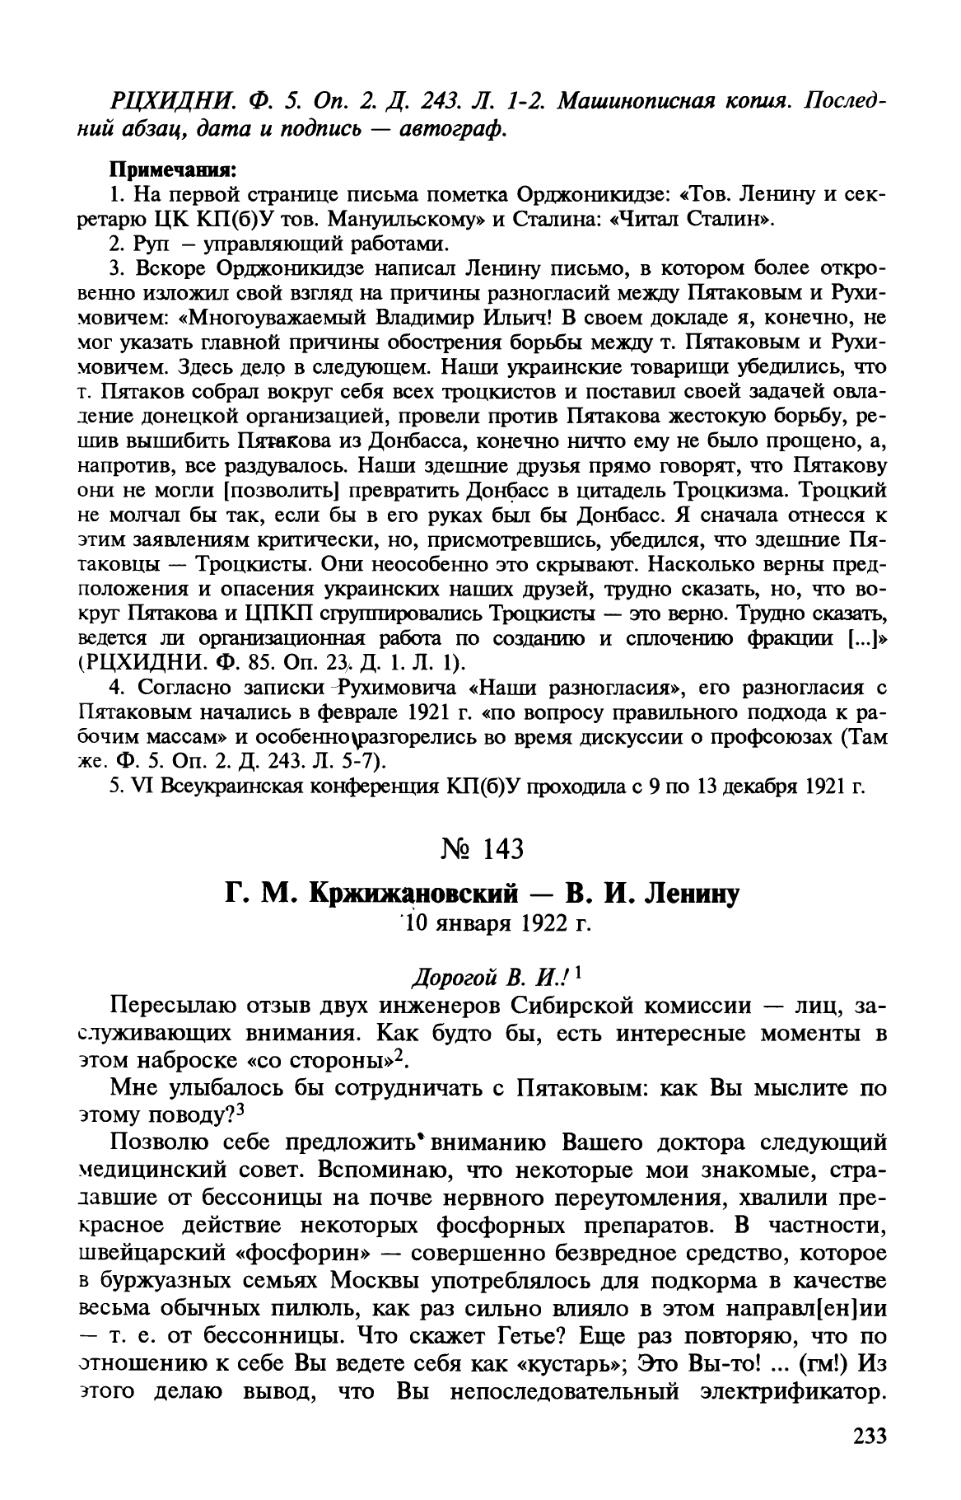 143. Г. М. Кржижановский — В. И. Ленину. 10 января 1922 г.